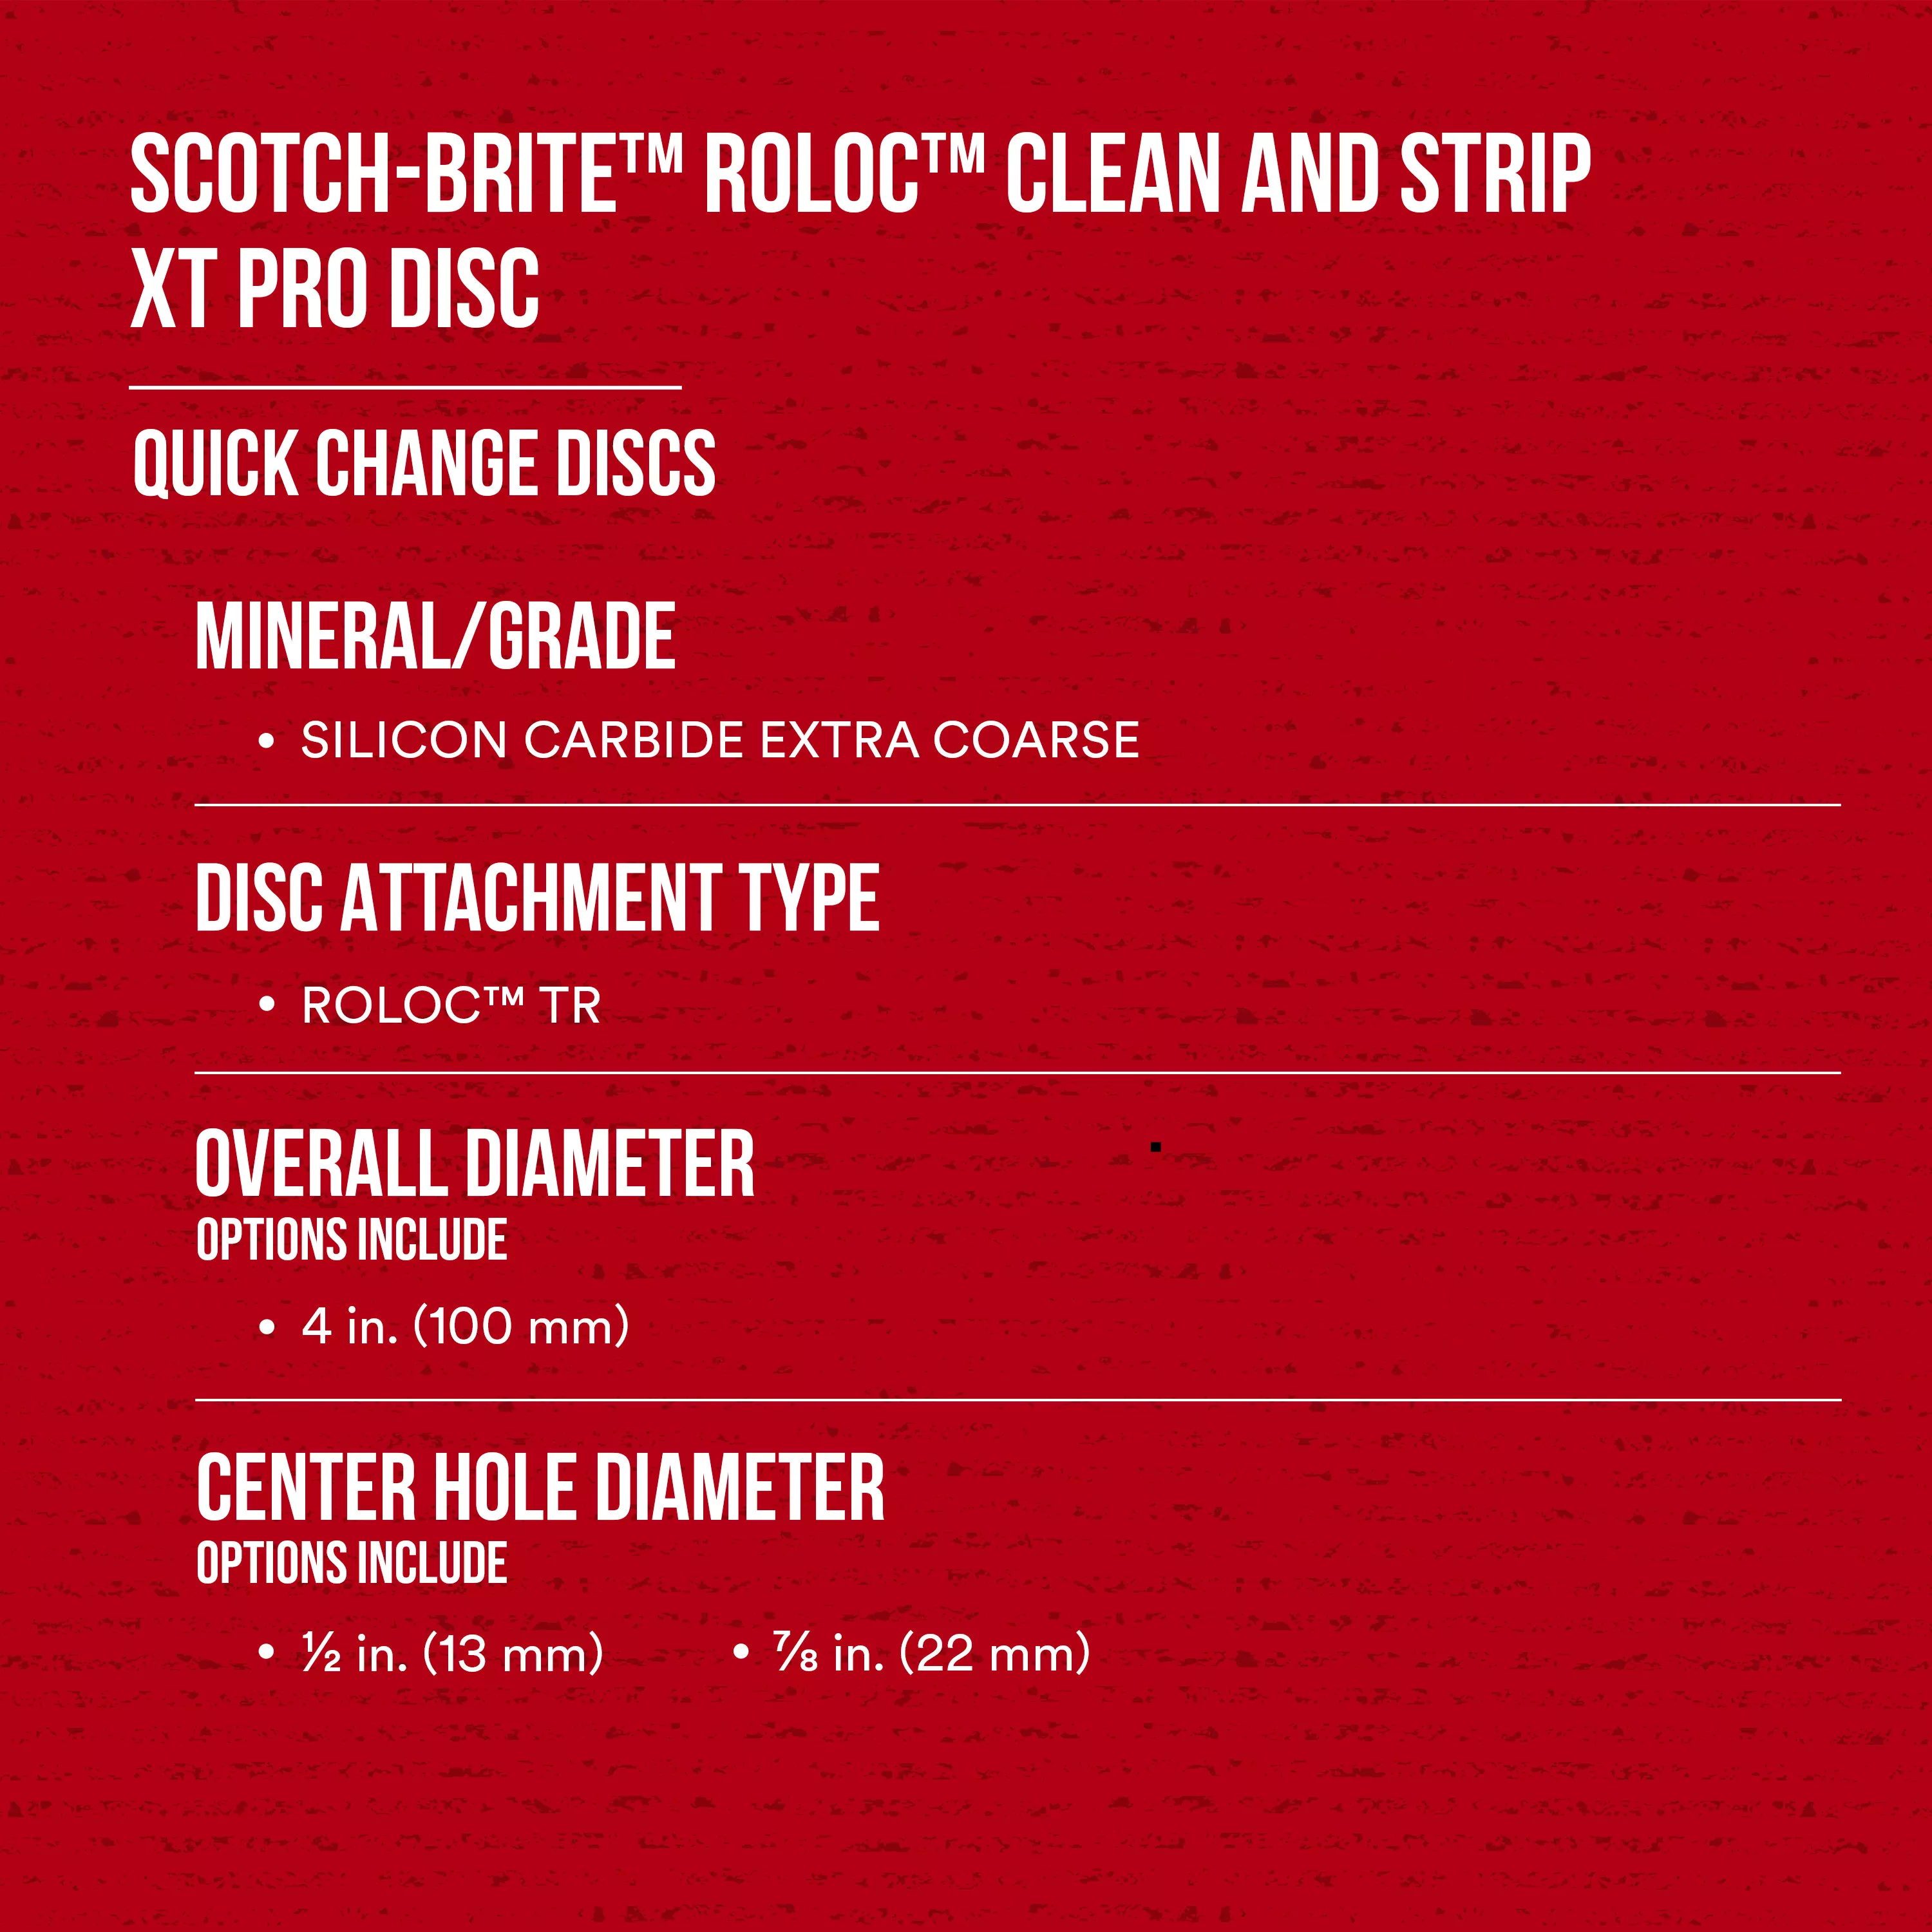 SKU 7100258623 | Scotch-Brite™ Roloc™ Clean and Strip XT Pro Disc